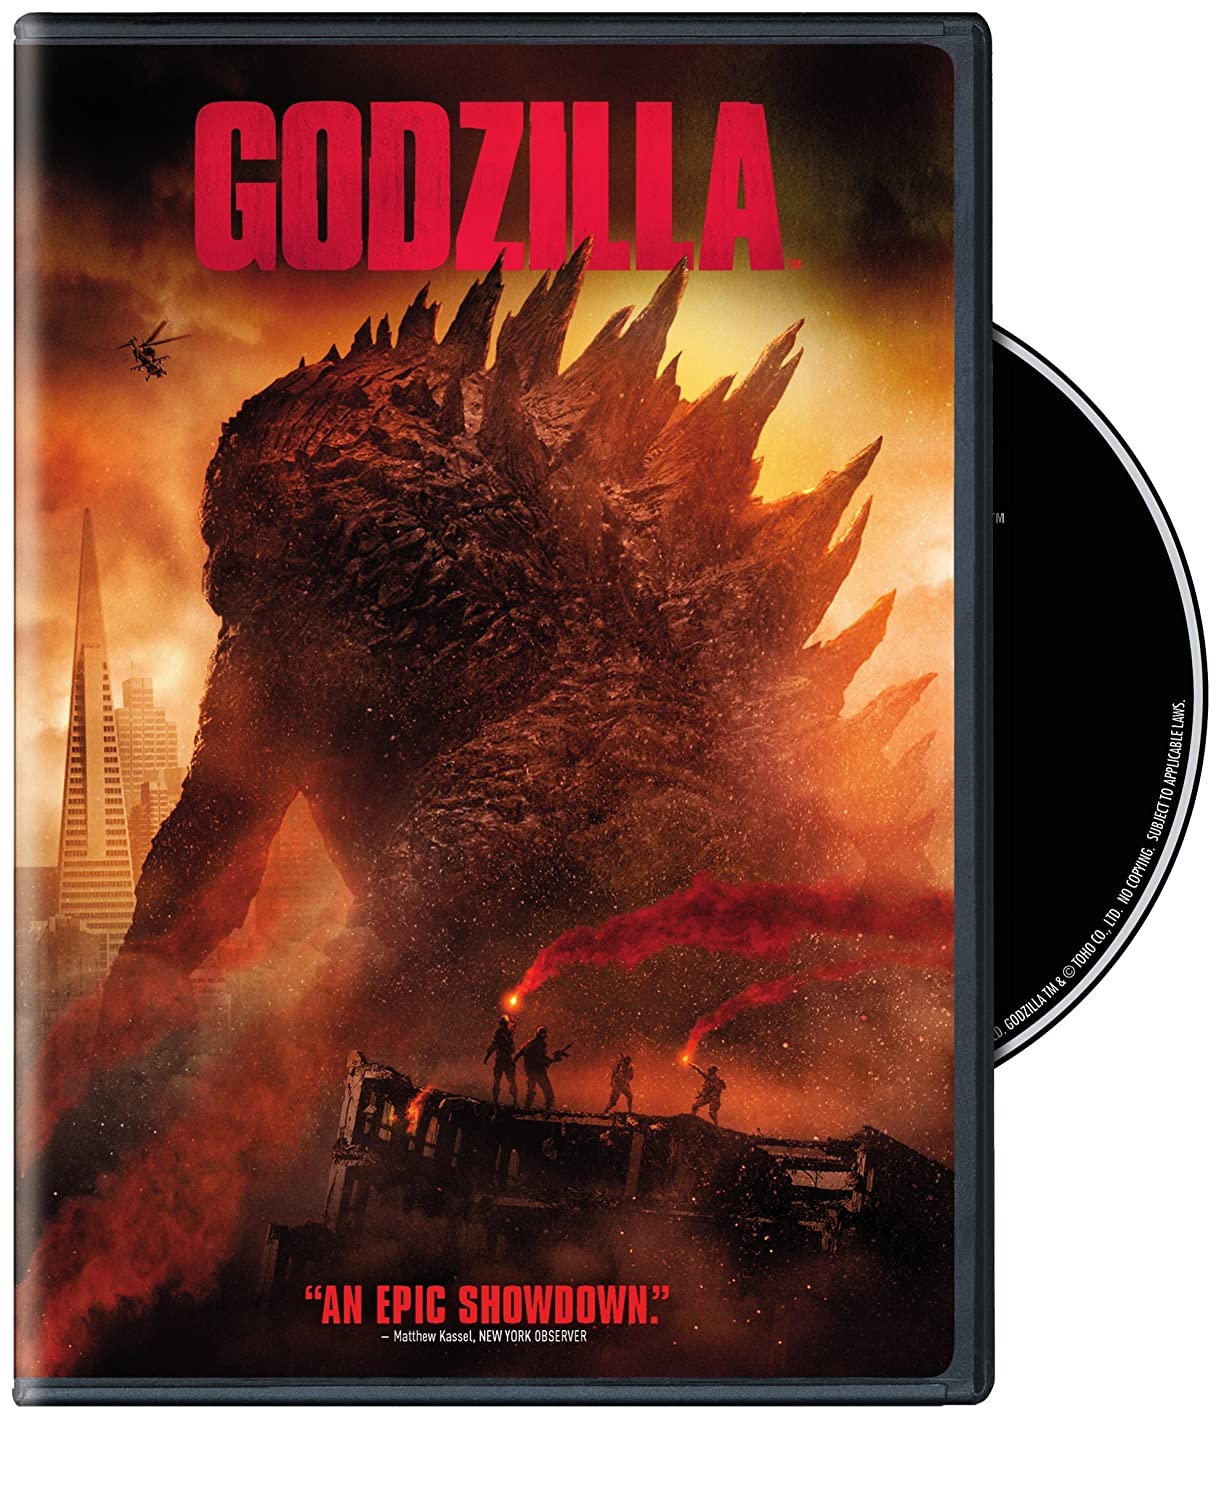 Godzilla (2014) starring Bryan Cranston, Ken Watanabe, Aaron Taylor-Johnson, Sally Hawkins